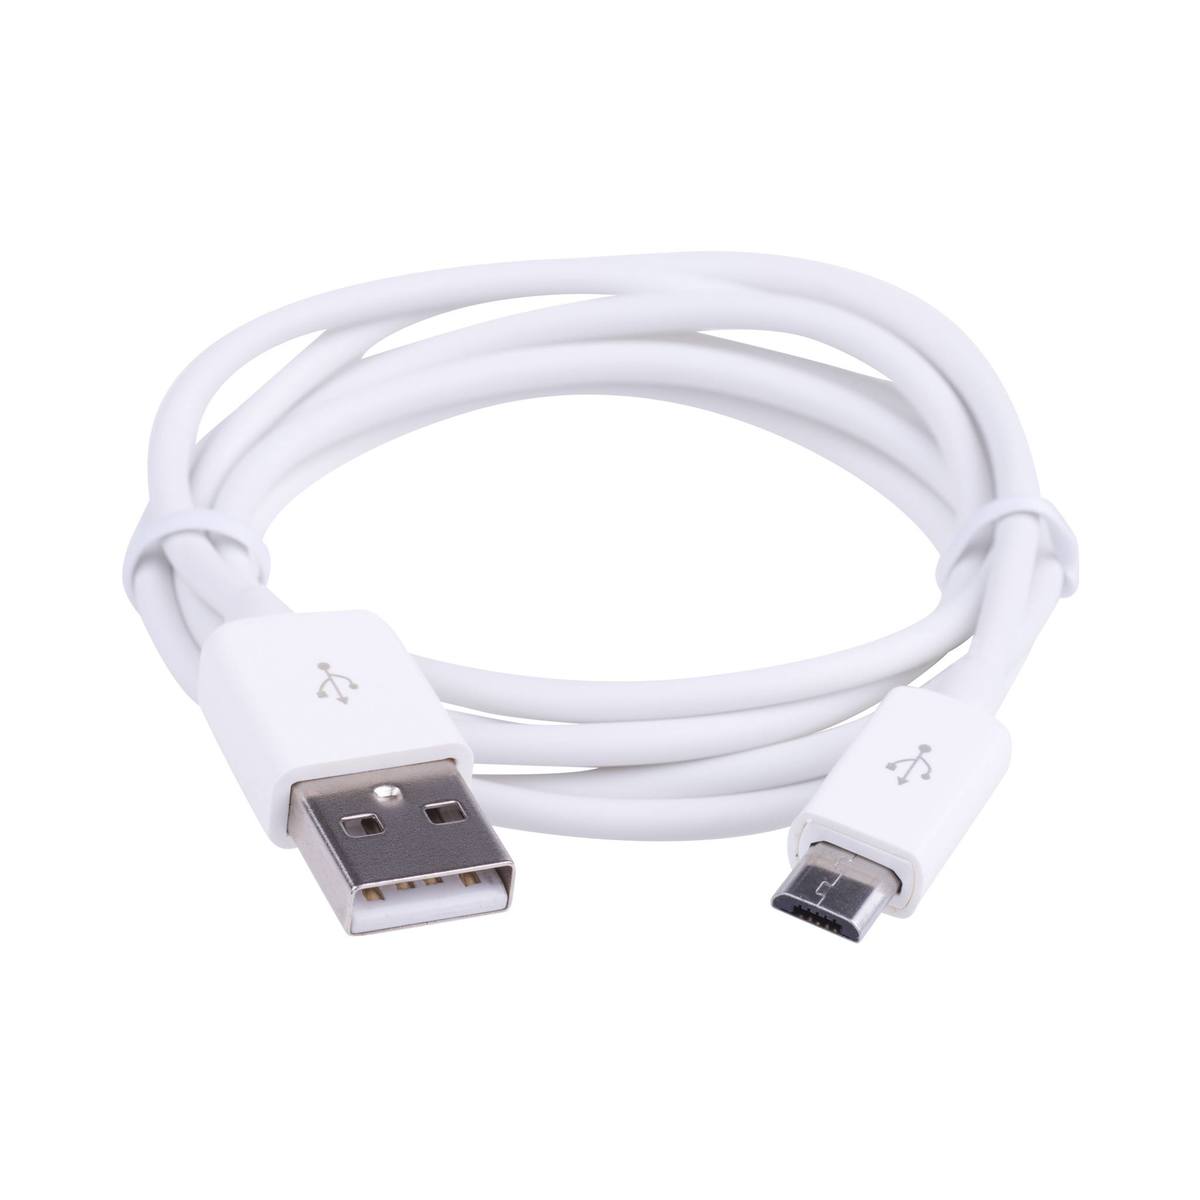 Mikro USB - 1 m kabel, Hvid